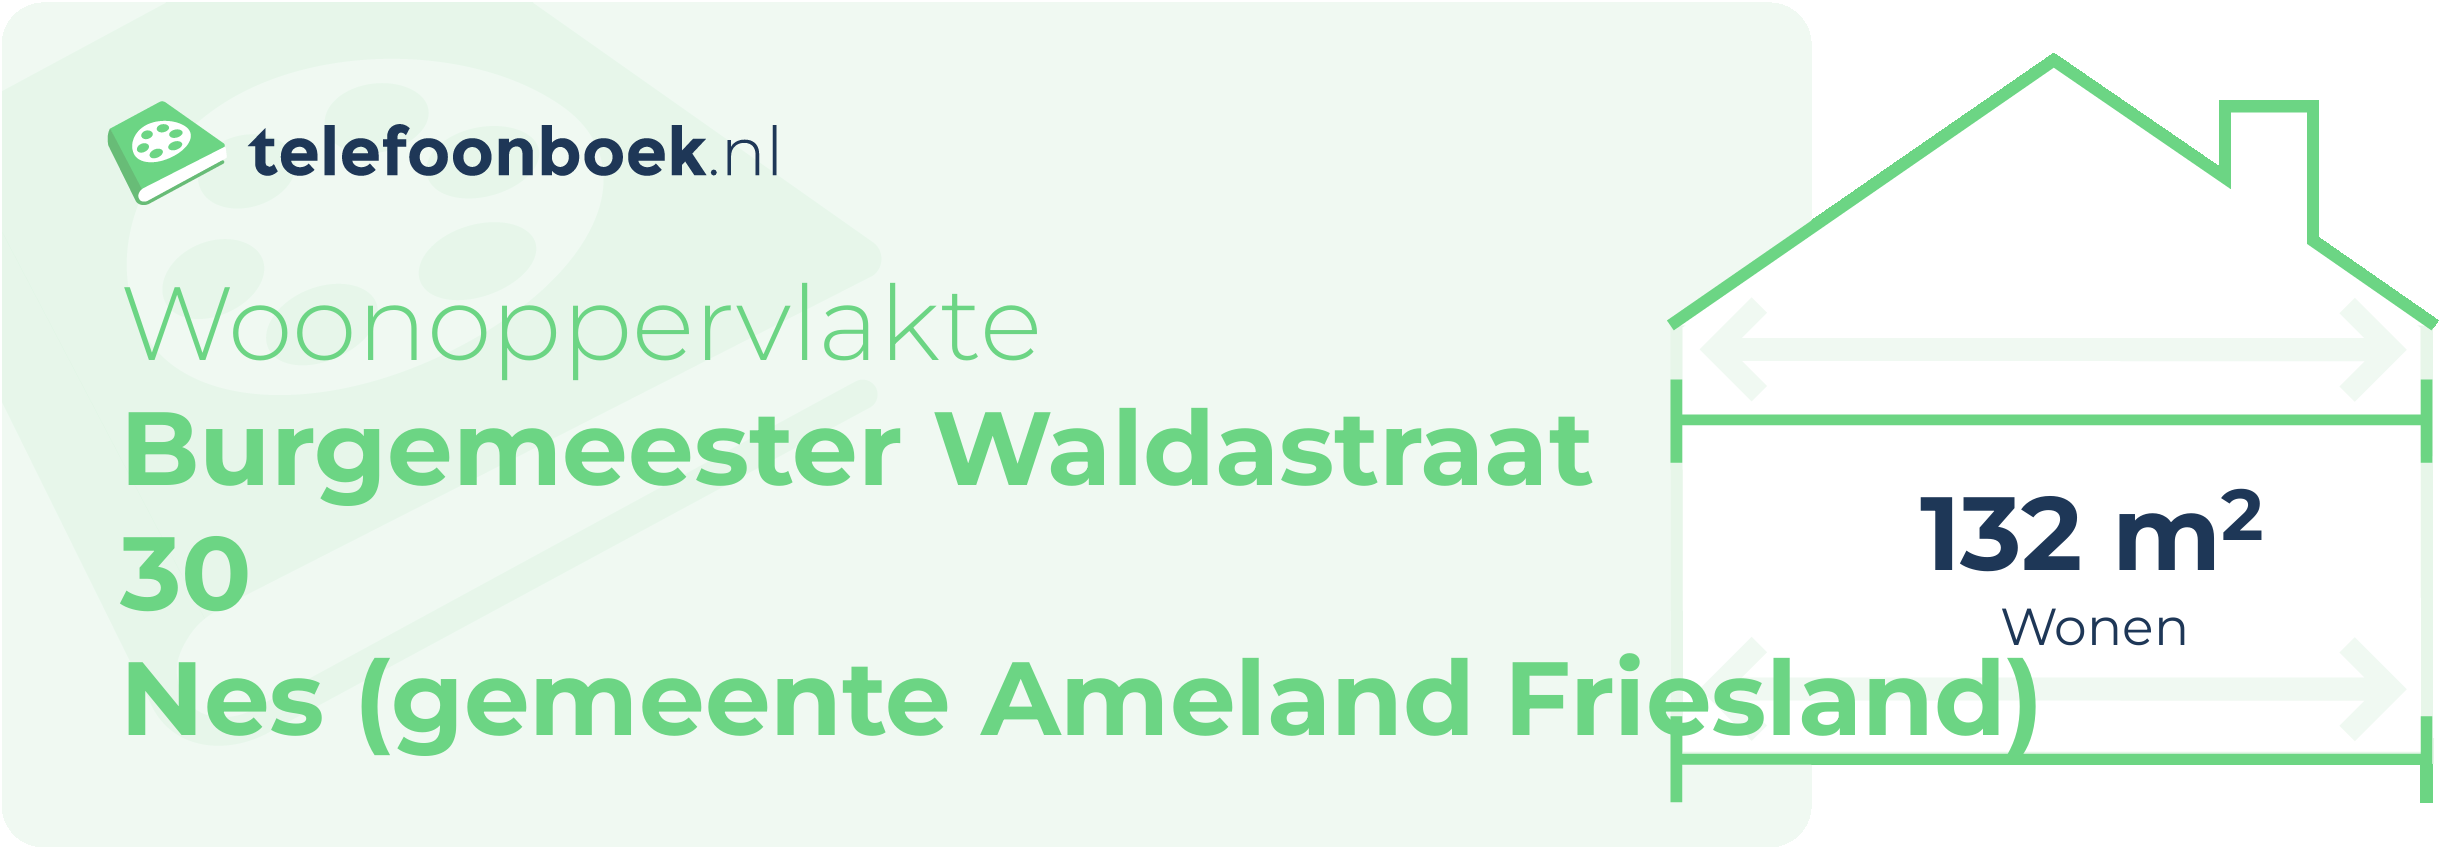 Woonoppervlakte Burgemeester Waldastraat 30 Nes (gemeente Ameland Friesland)